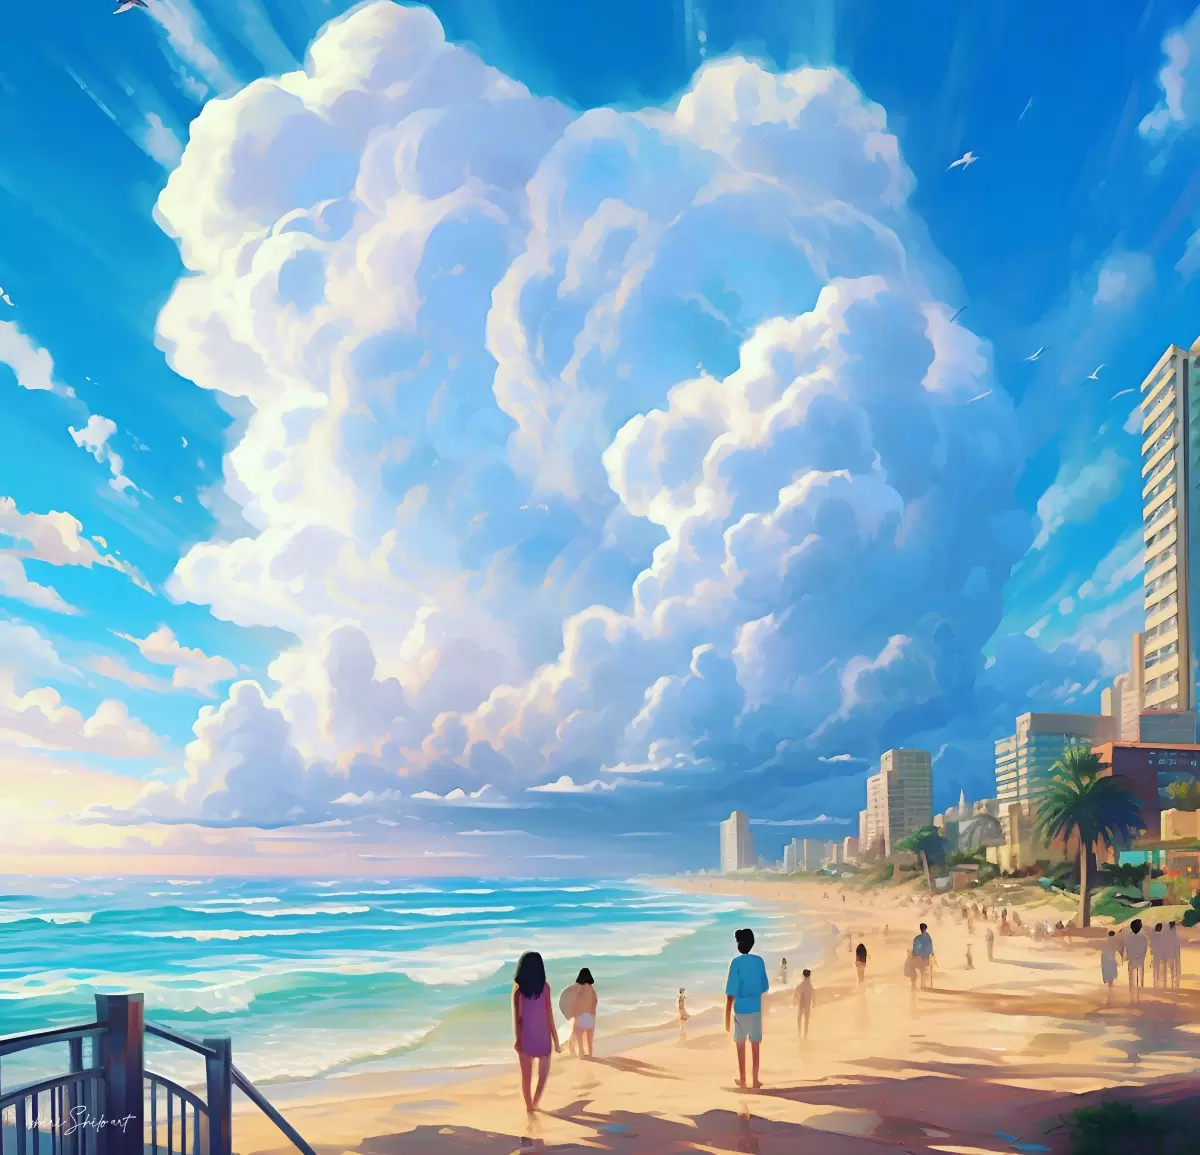 ענני תל אביב - שירי שילה - תמונות ים ושמים לסלון אנשים ודמויות עם בינה מלאכותית  - מק''ט: 446268